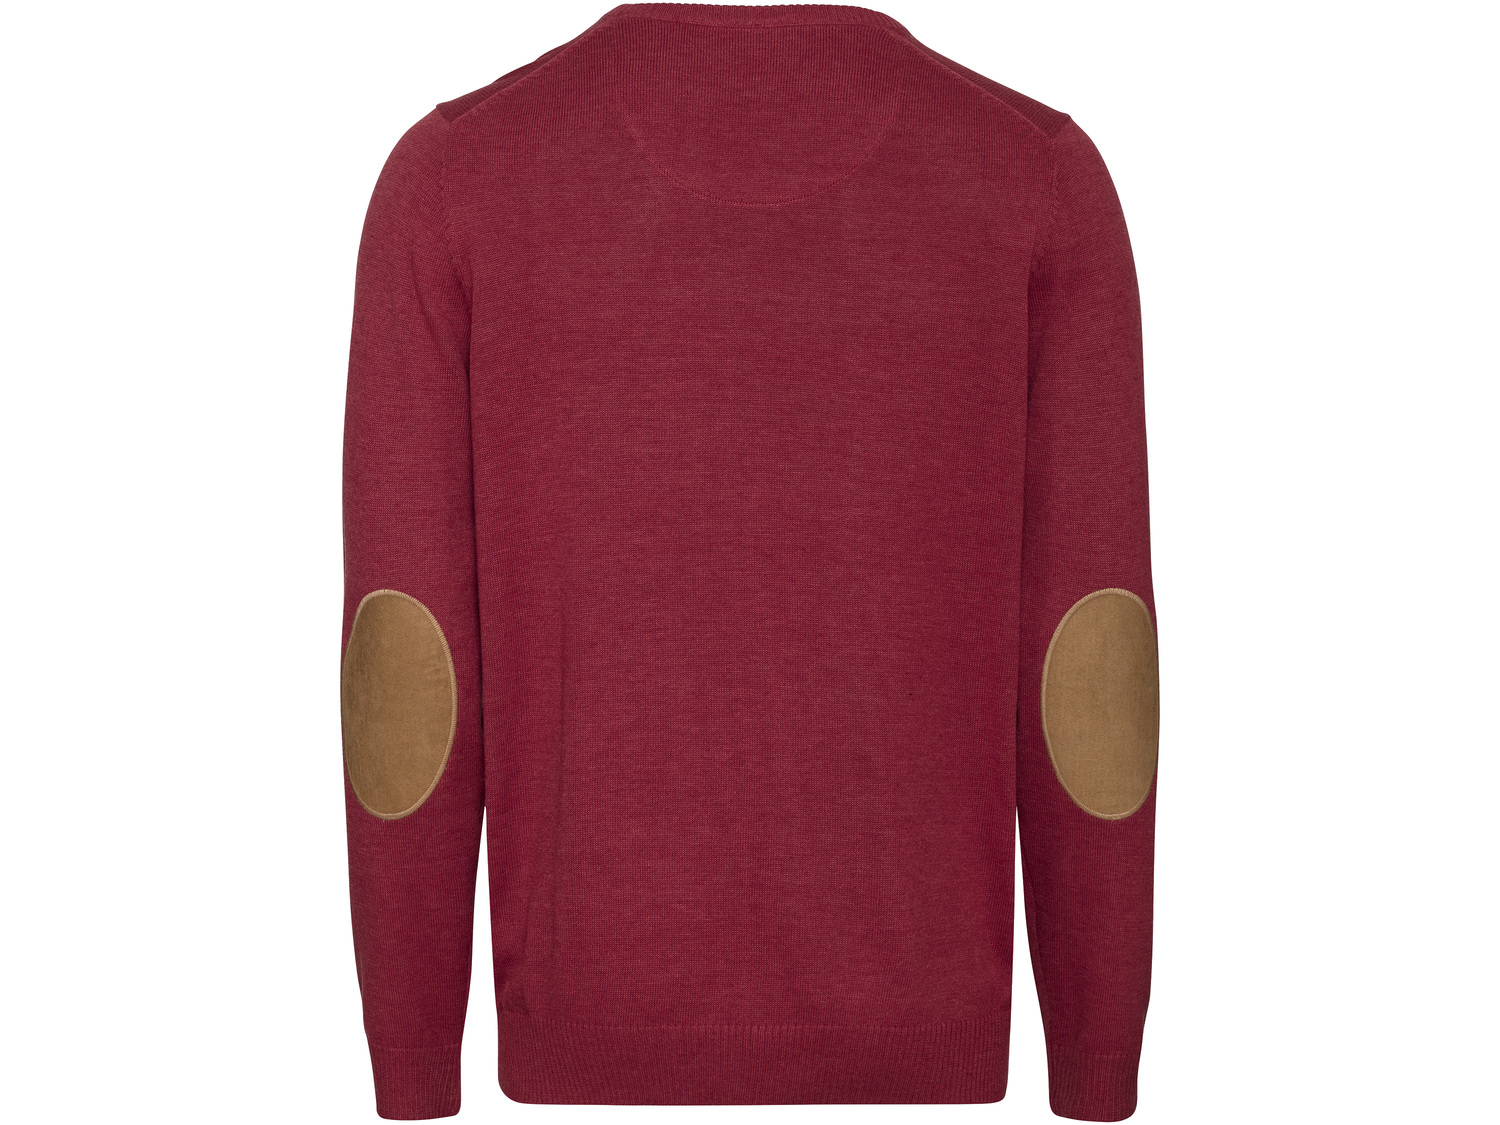 Sweter męski Livergy, cena 34,99 PLN 
- 100% bawełny
- rozmiary: M-XL
- dzianina ...